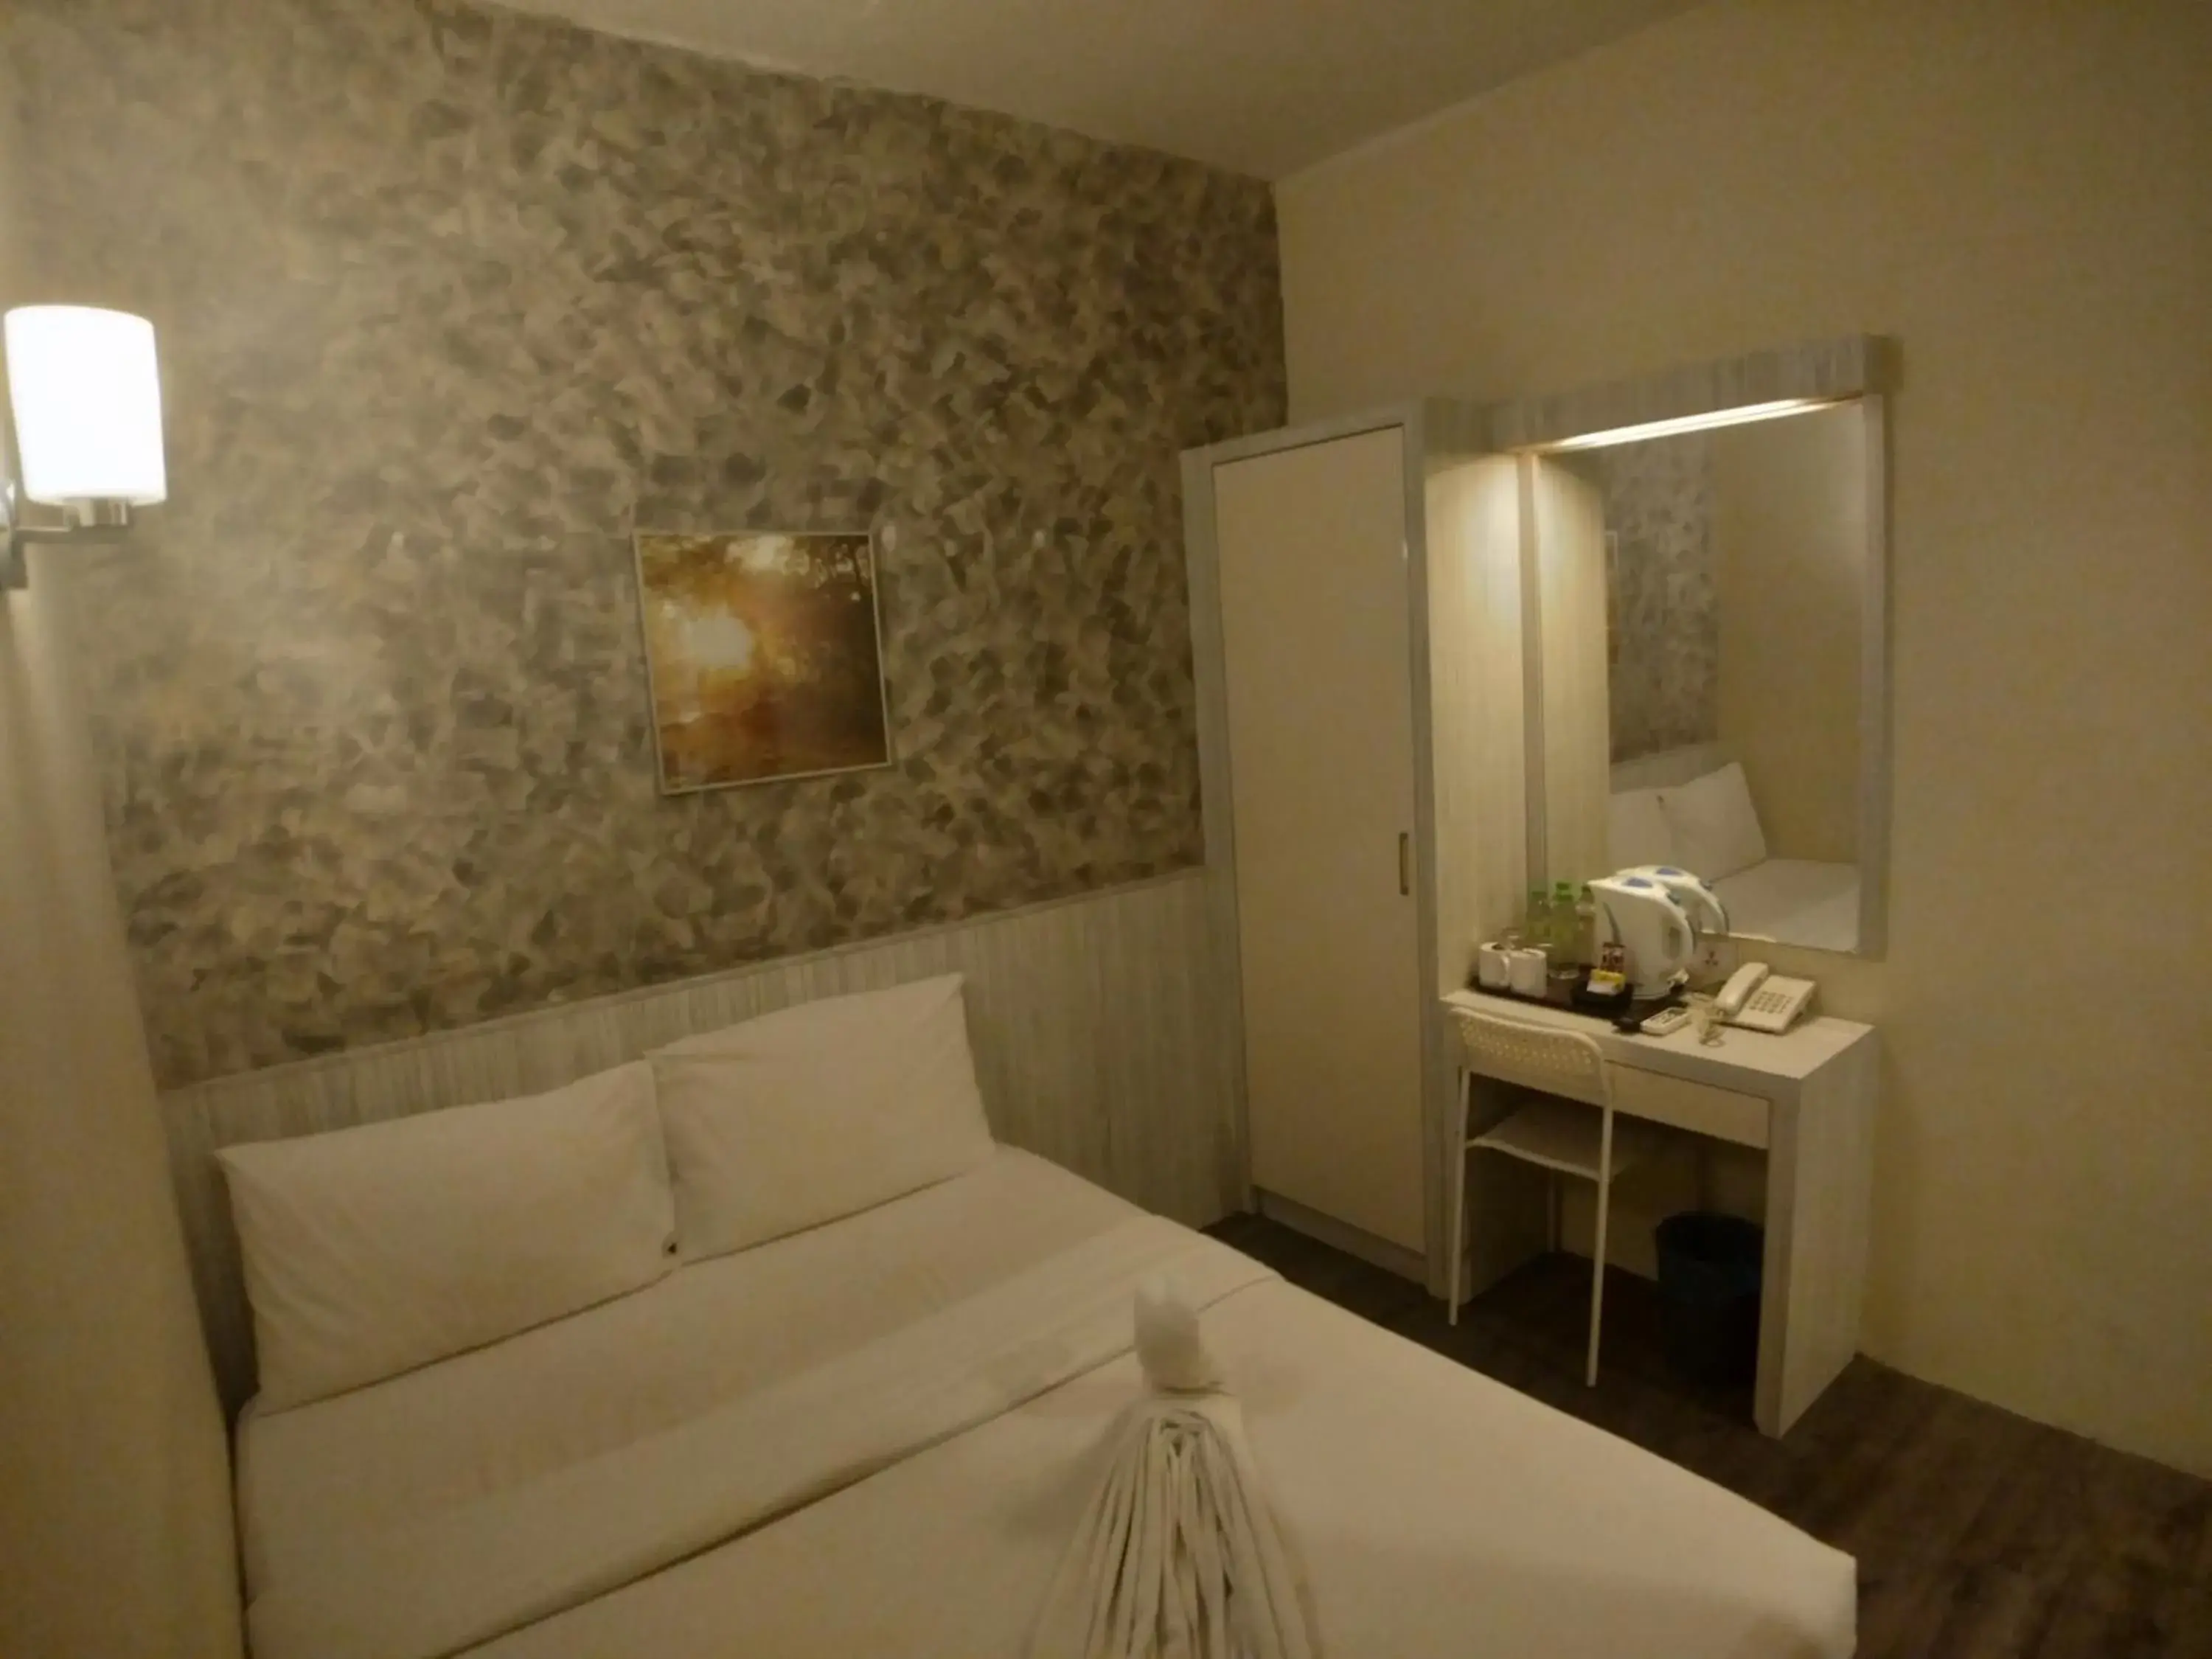 Bed in Hotel Westree KL Sentral